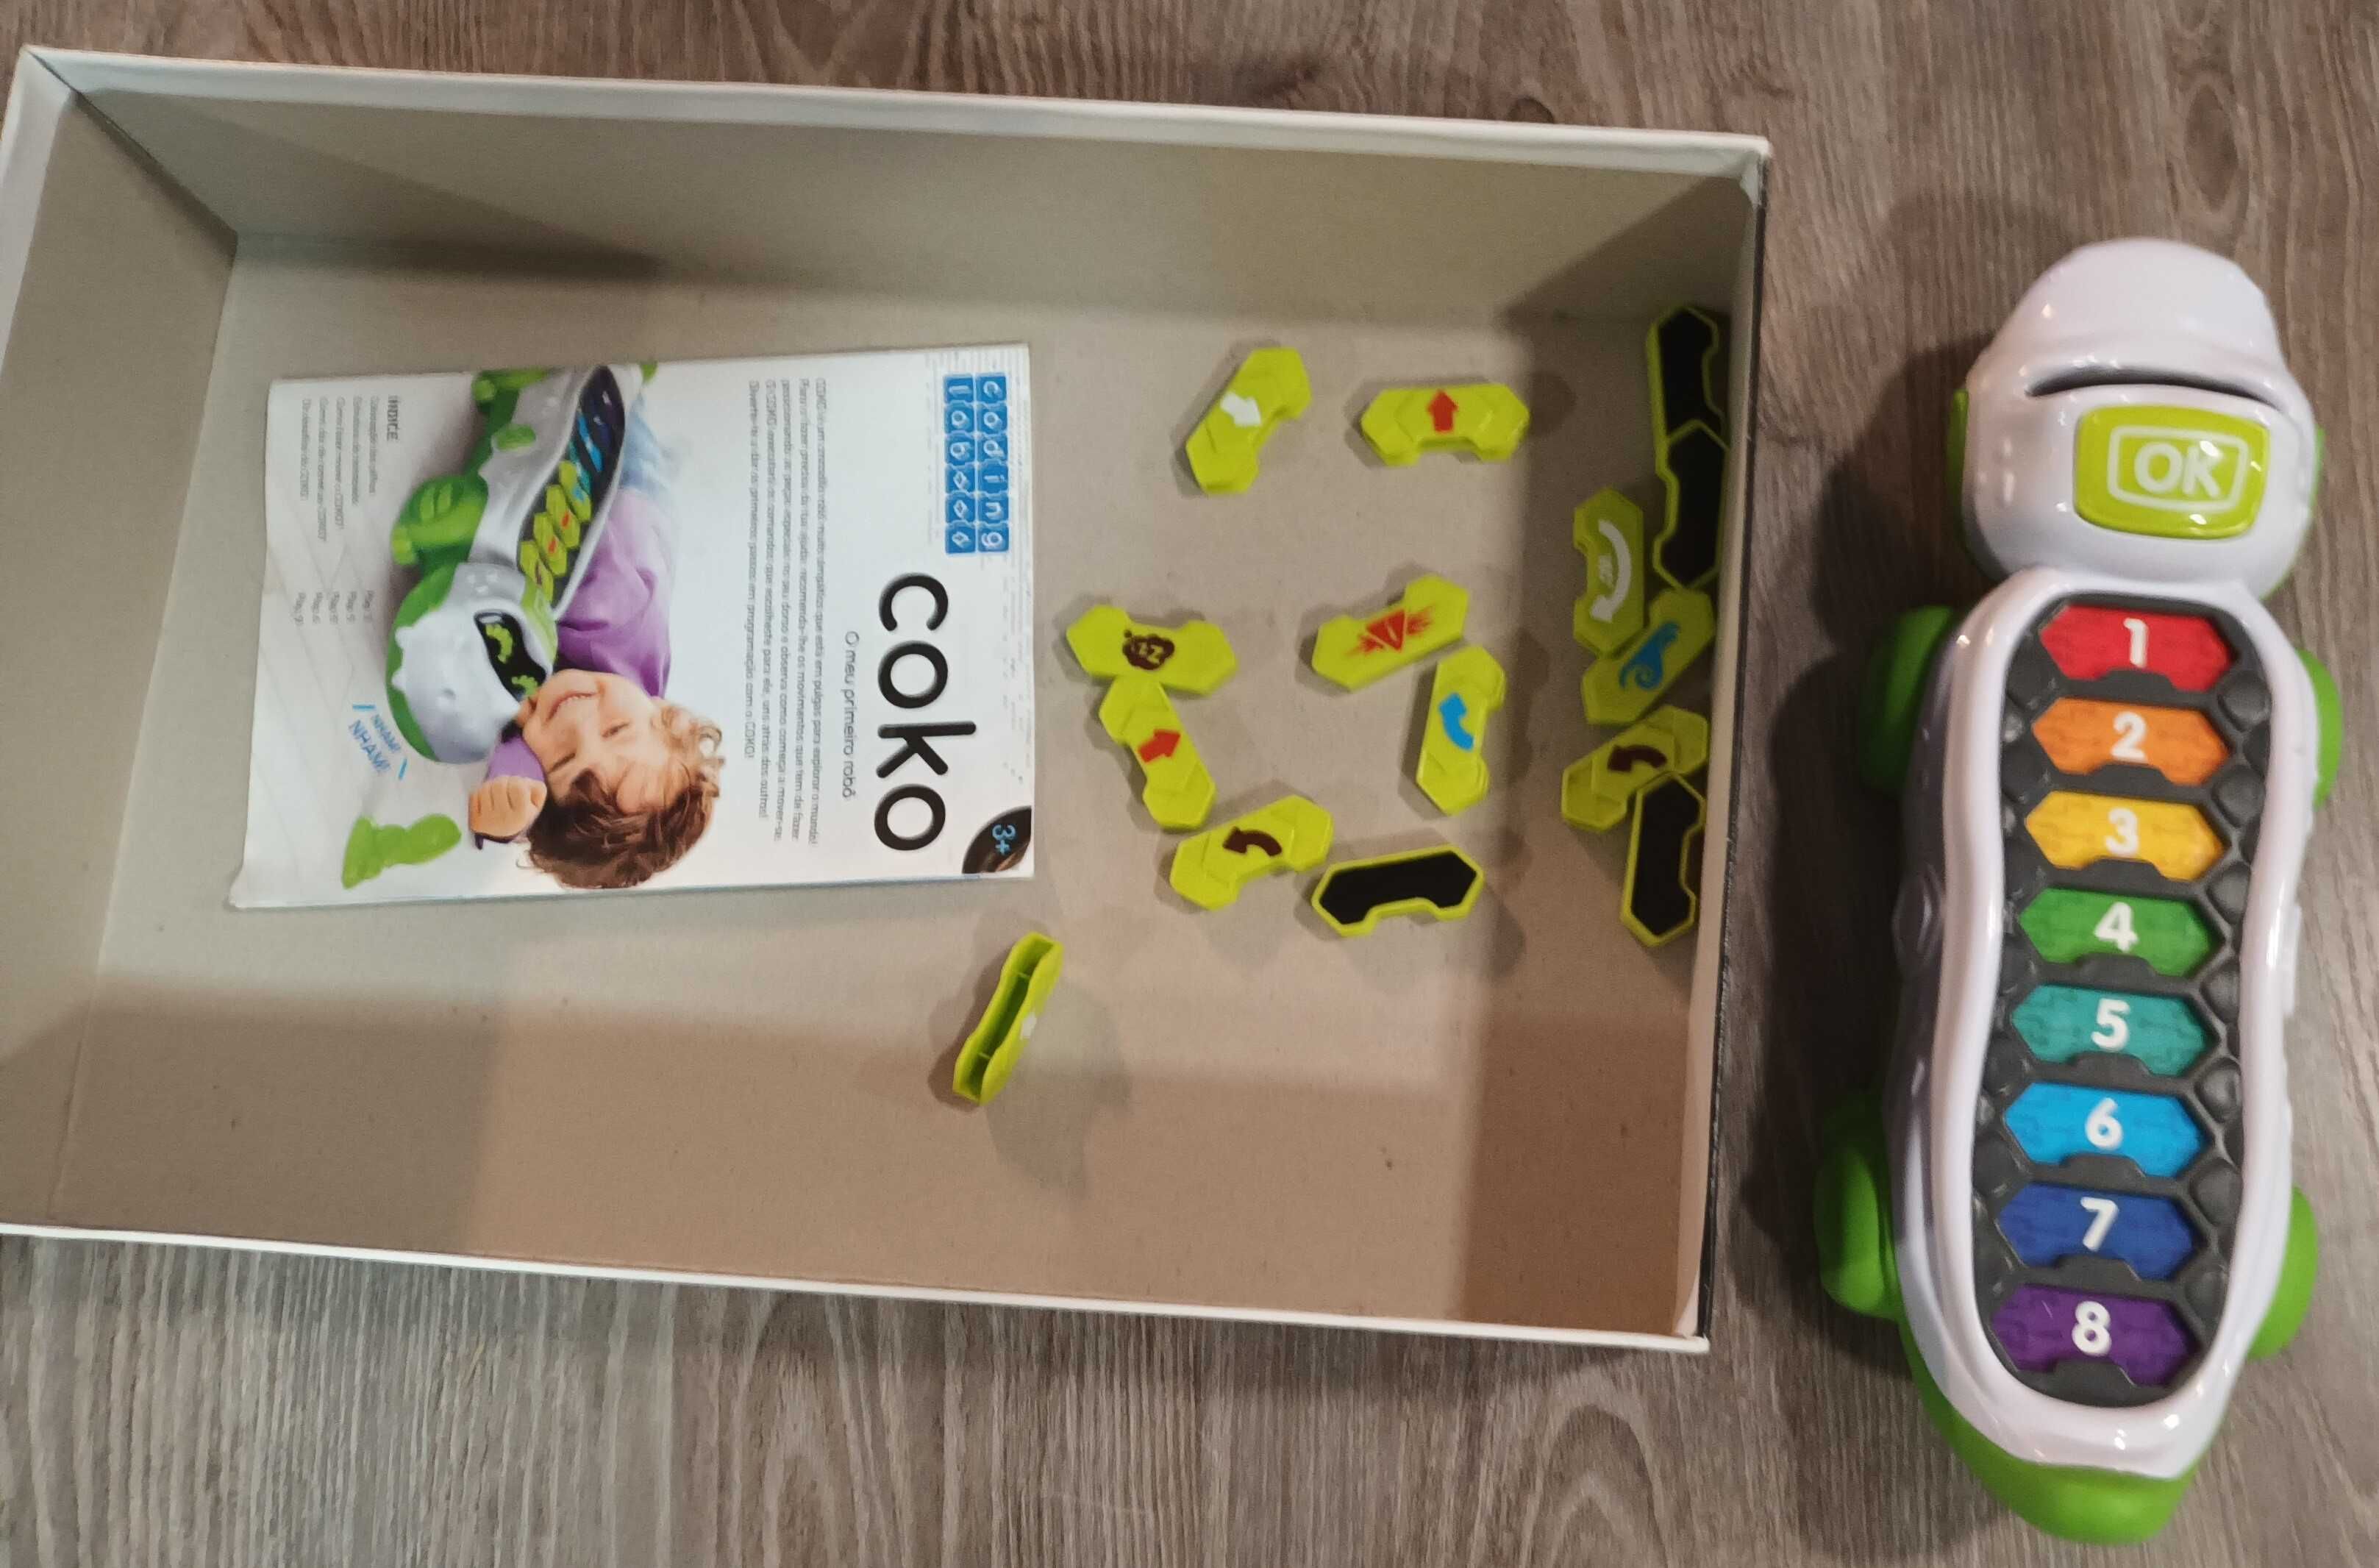 Coko: o meu primeiro robô - Clementoni - Brinquedo Multimédia